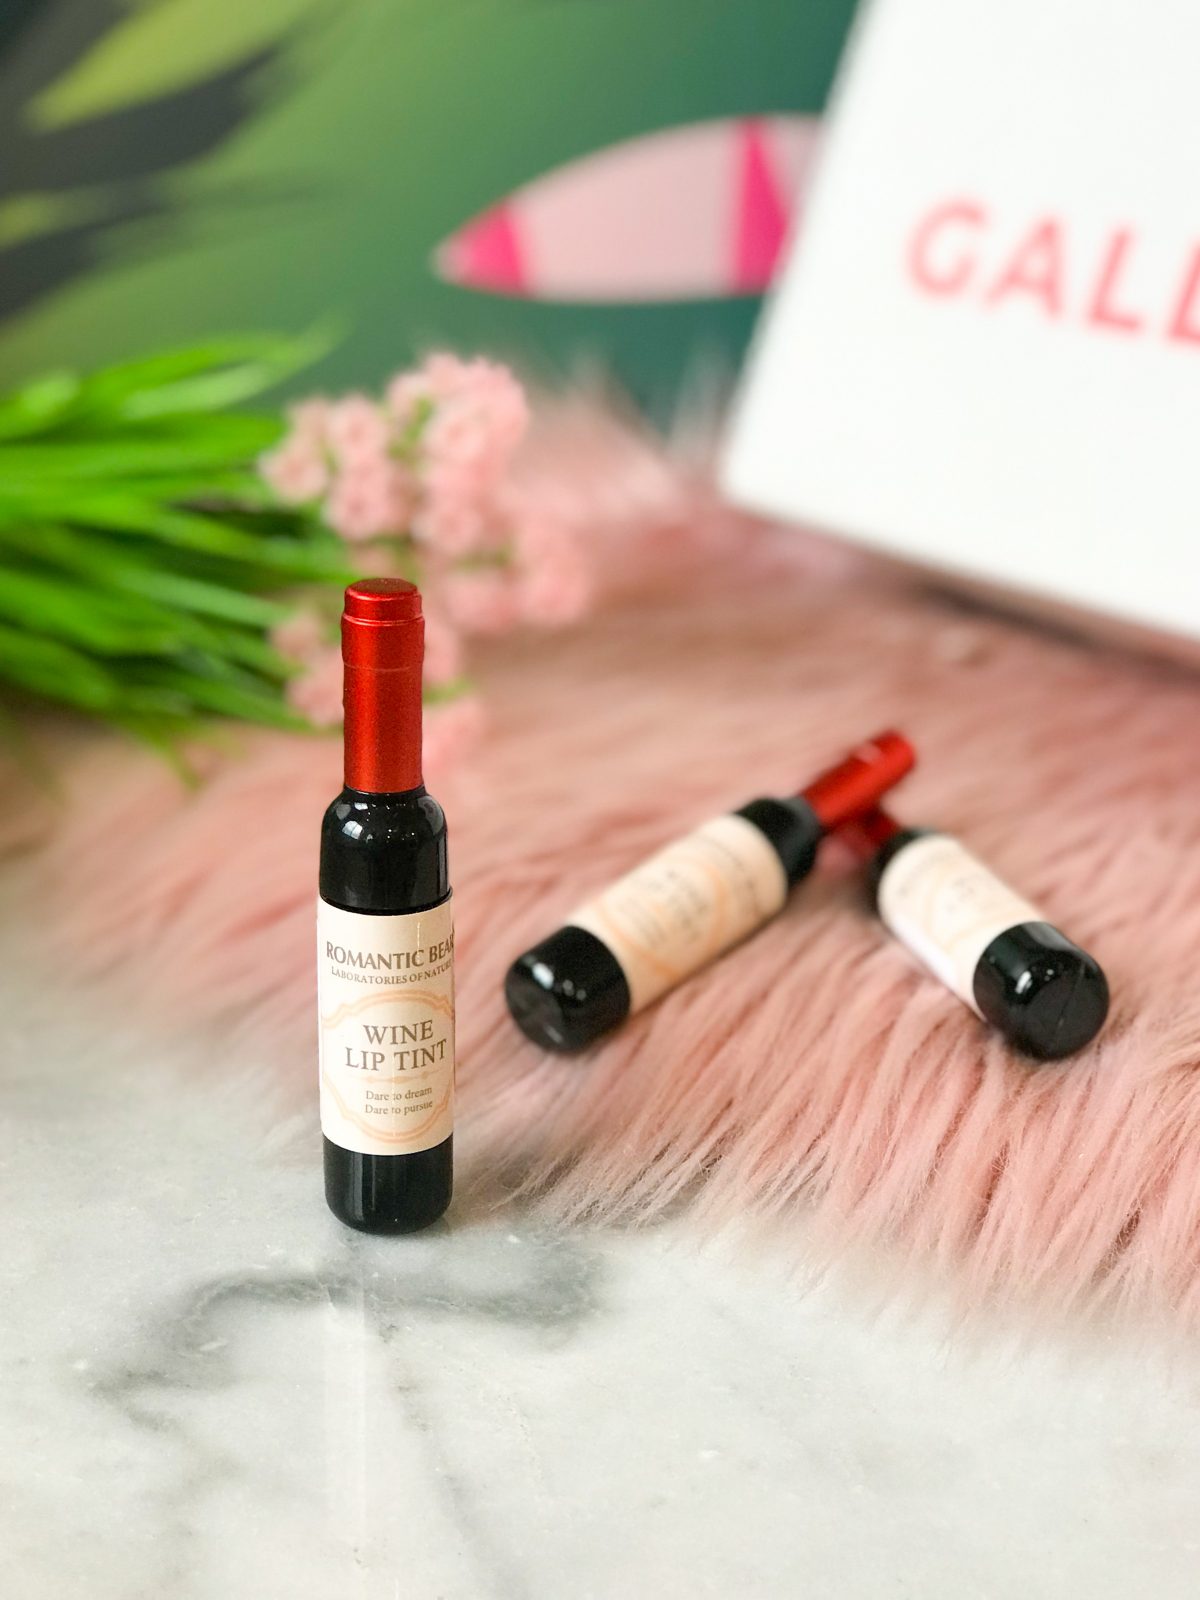 lipstick o labial líquido en forma de botella de vino - ecuador - ropa gallardo - labial rojo